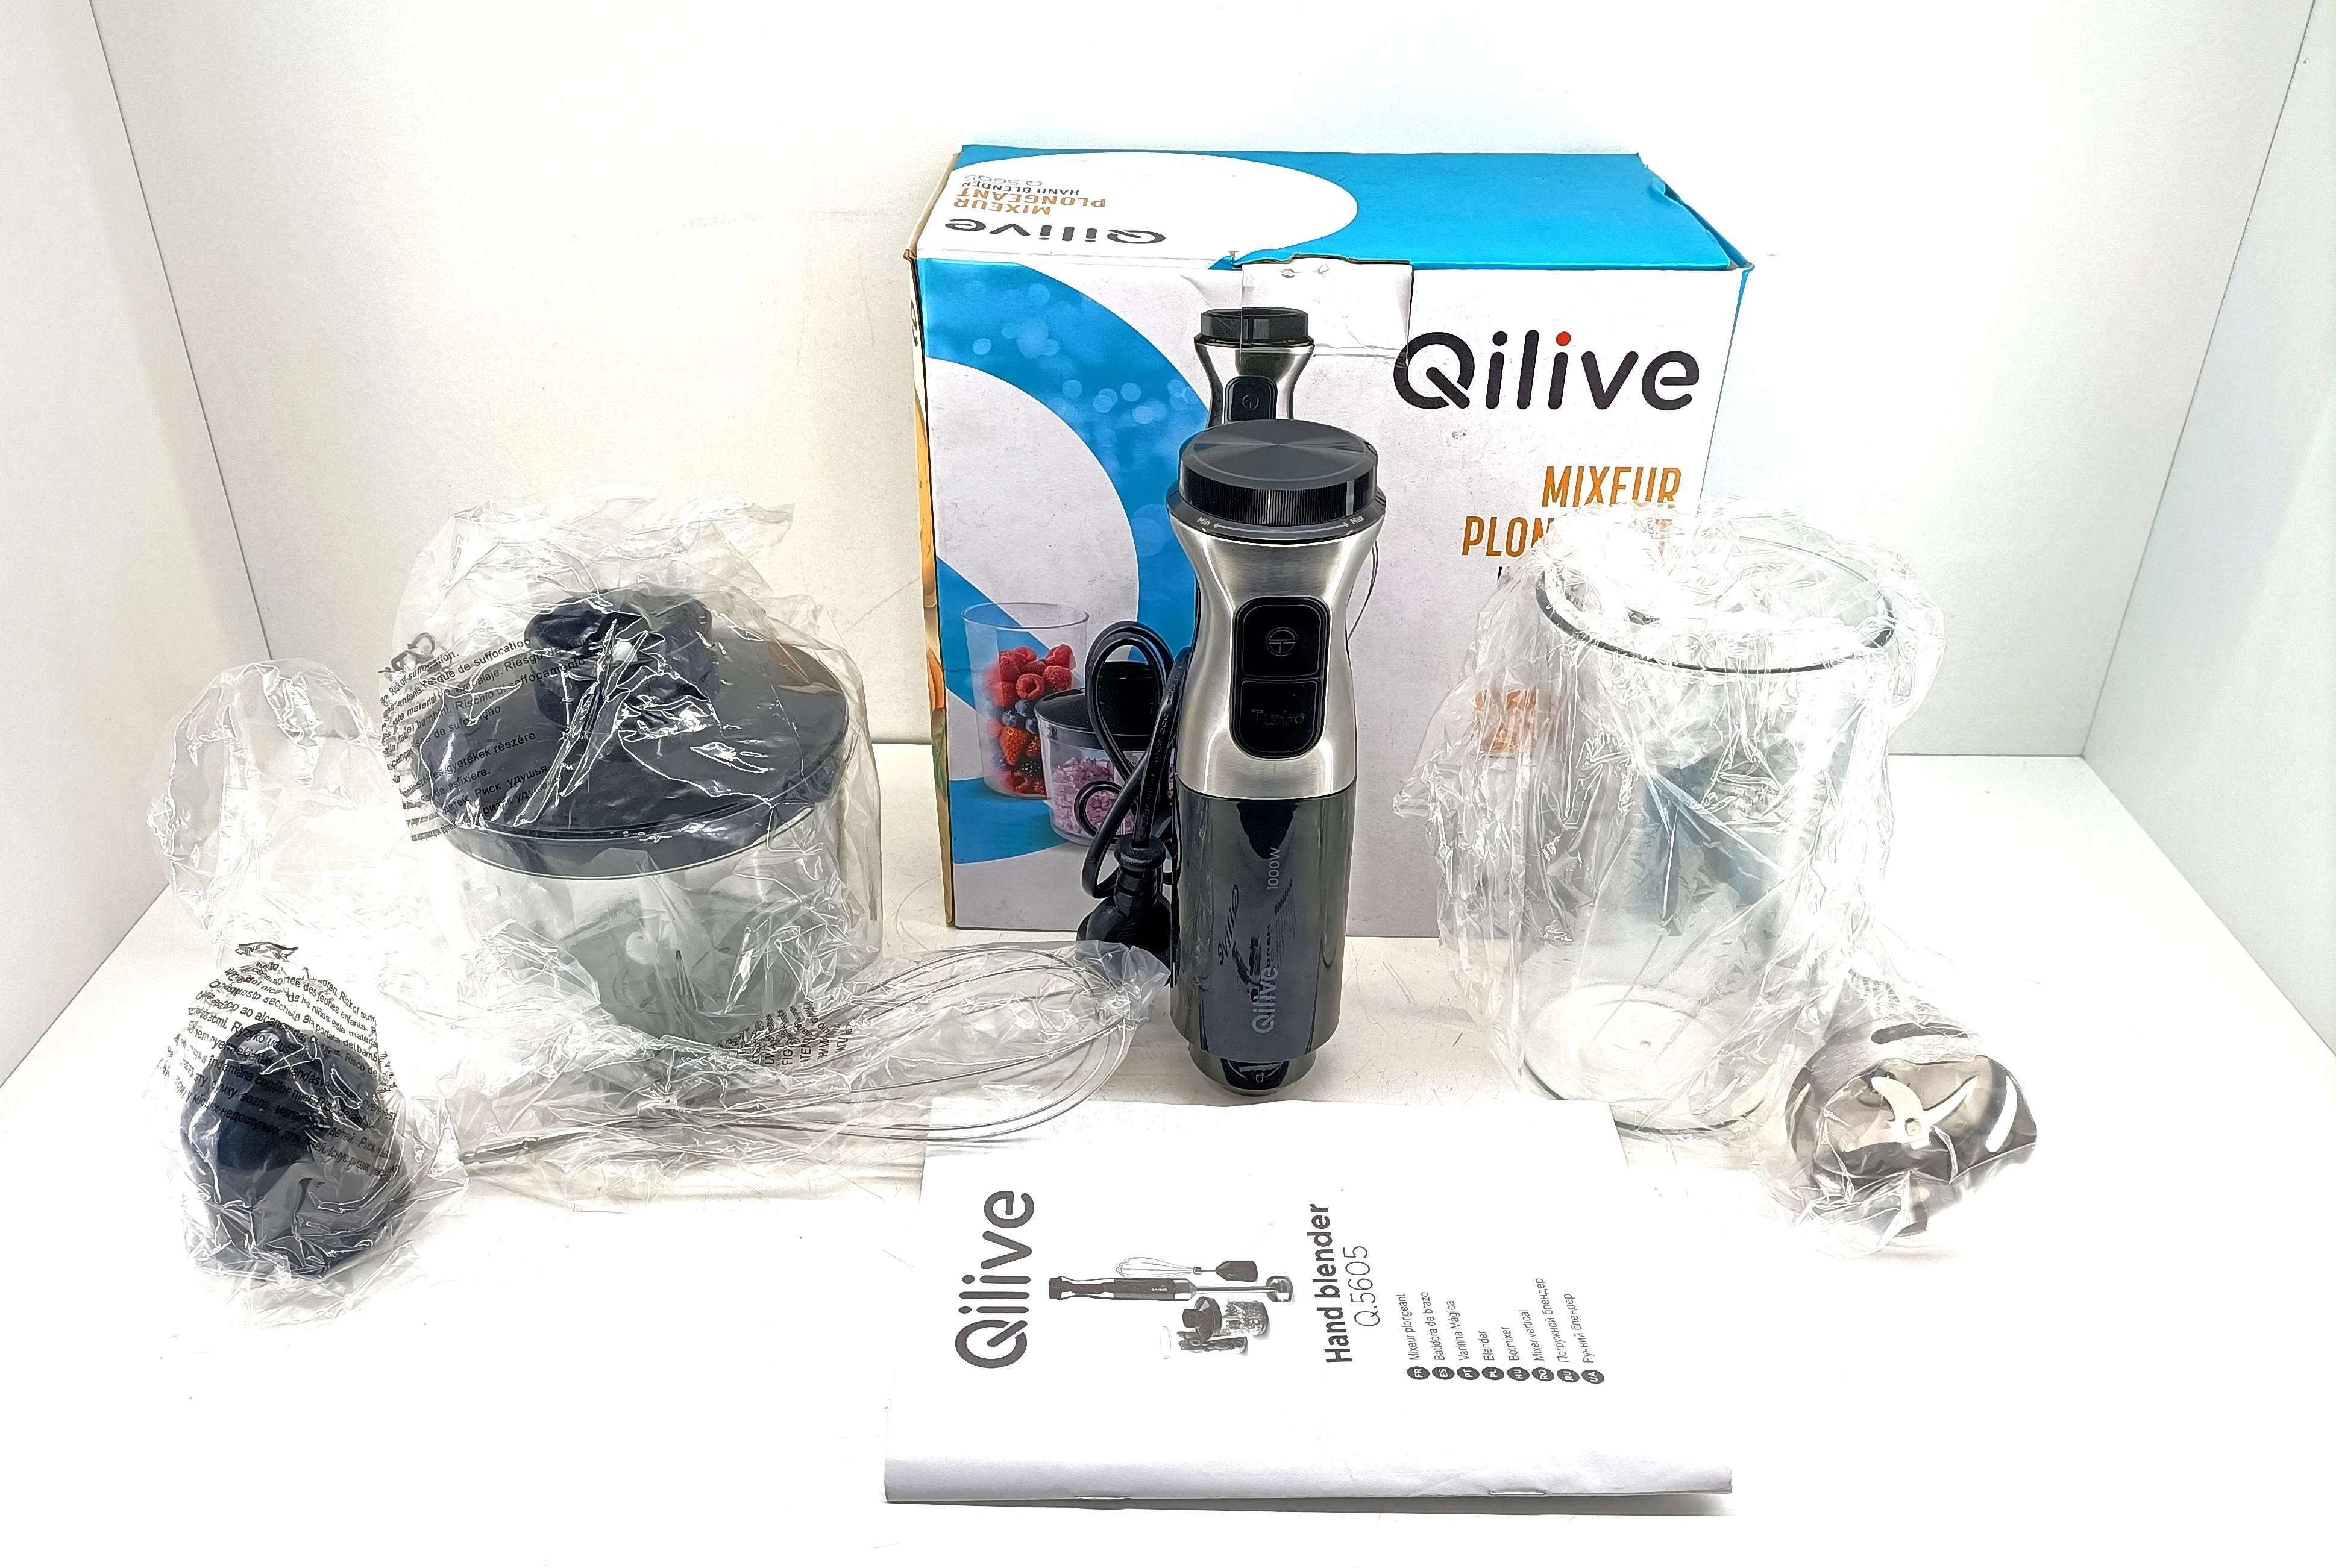 QILIVE Mixeur Q.5605 - Noir pas cher 